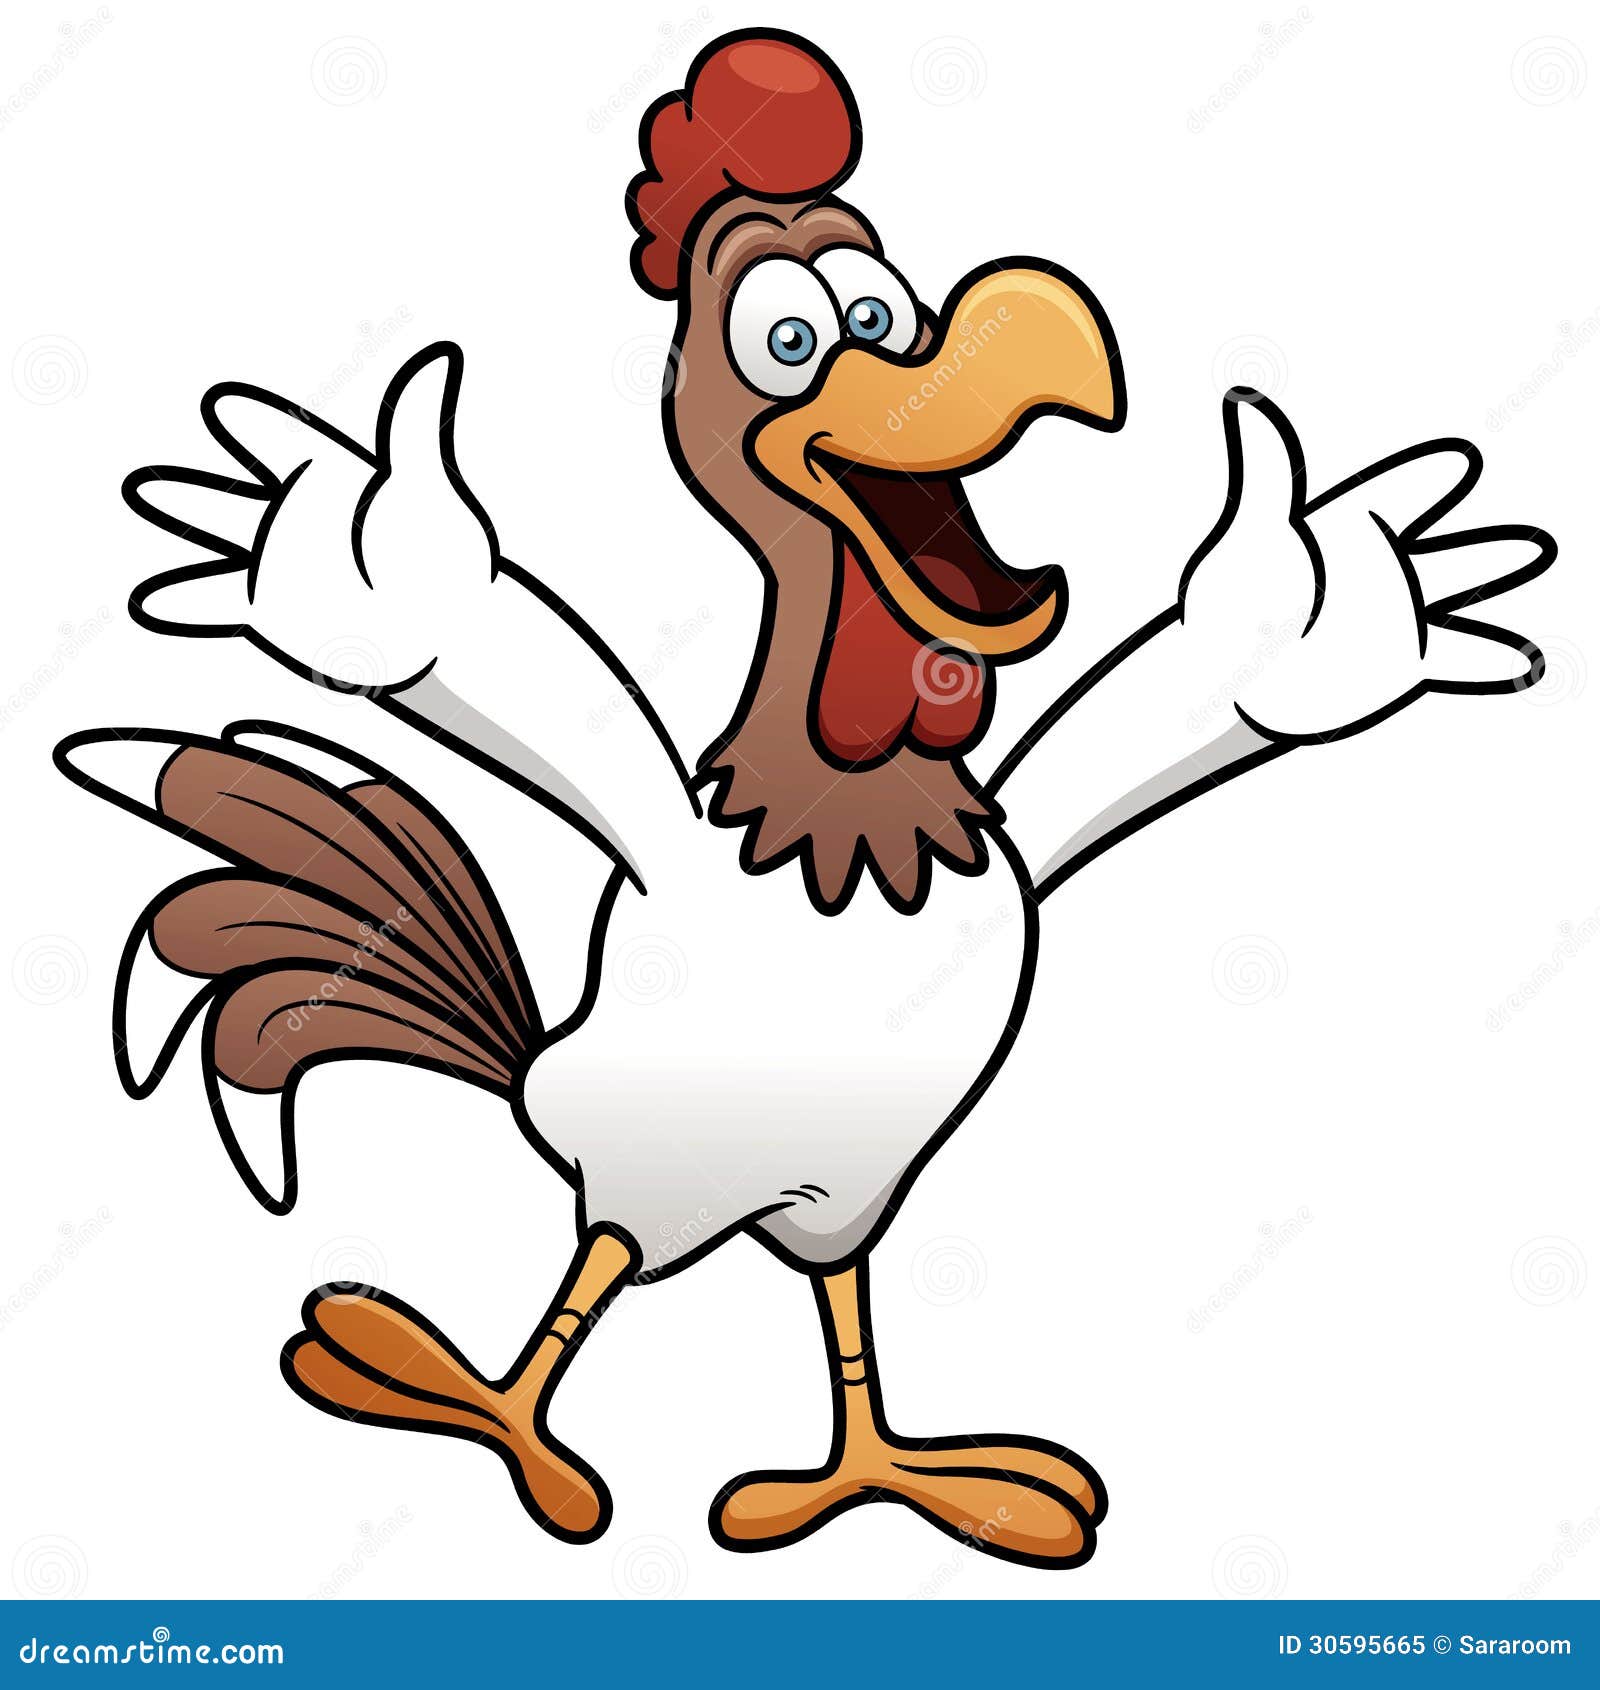 Happy Chicken Cartoon